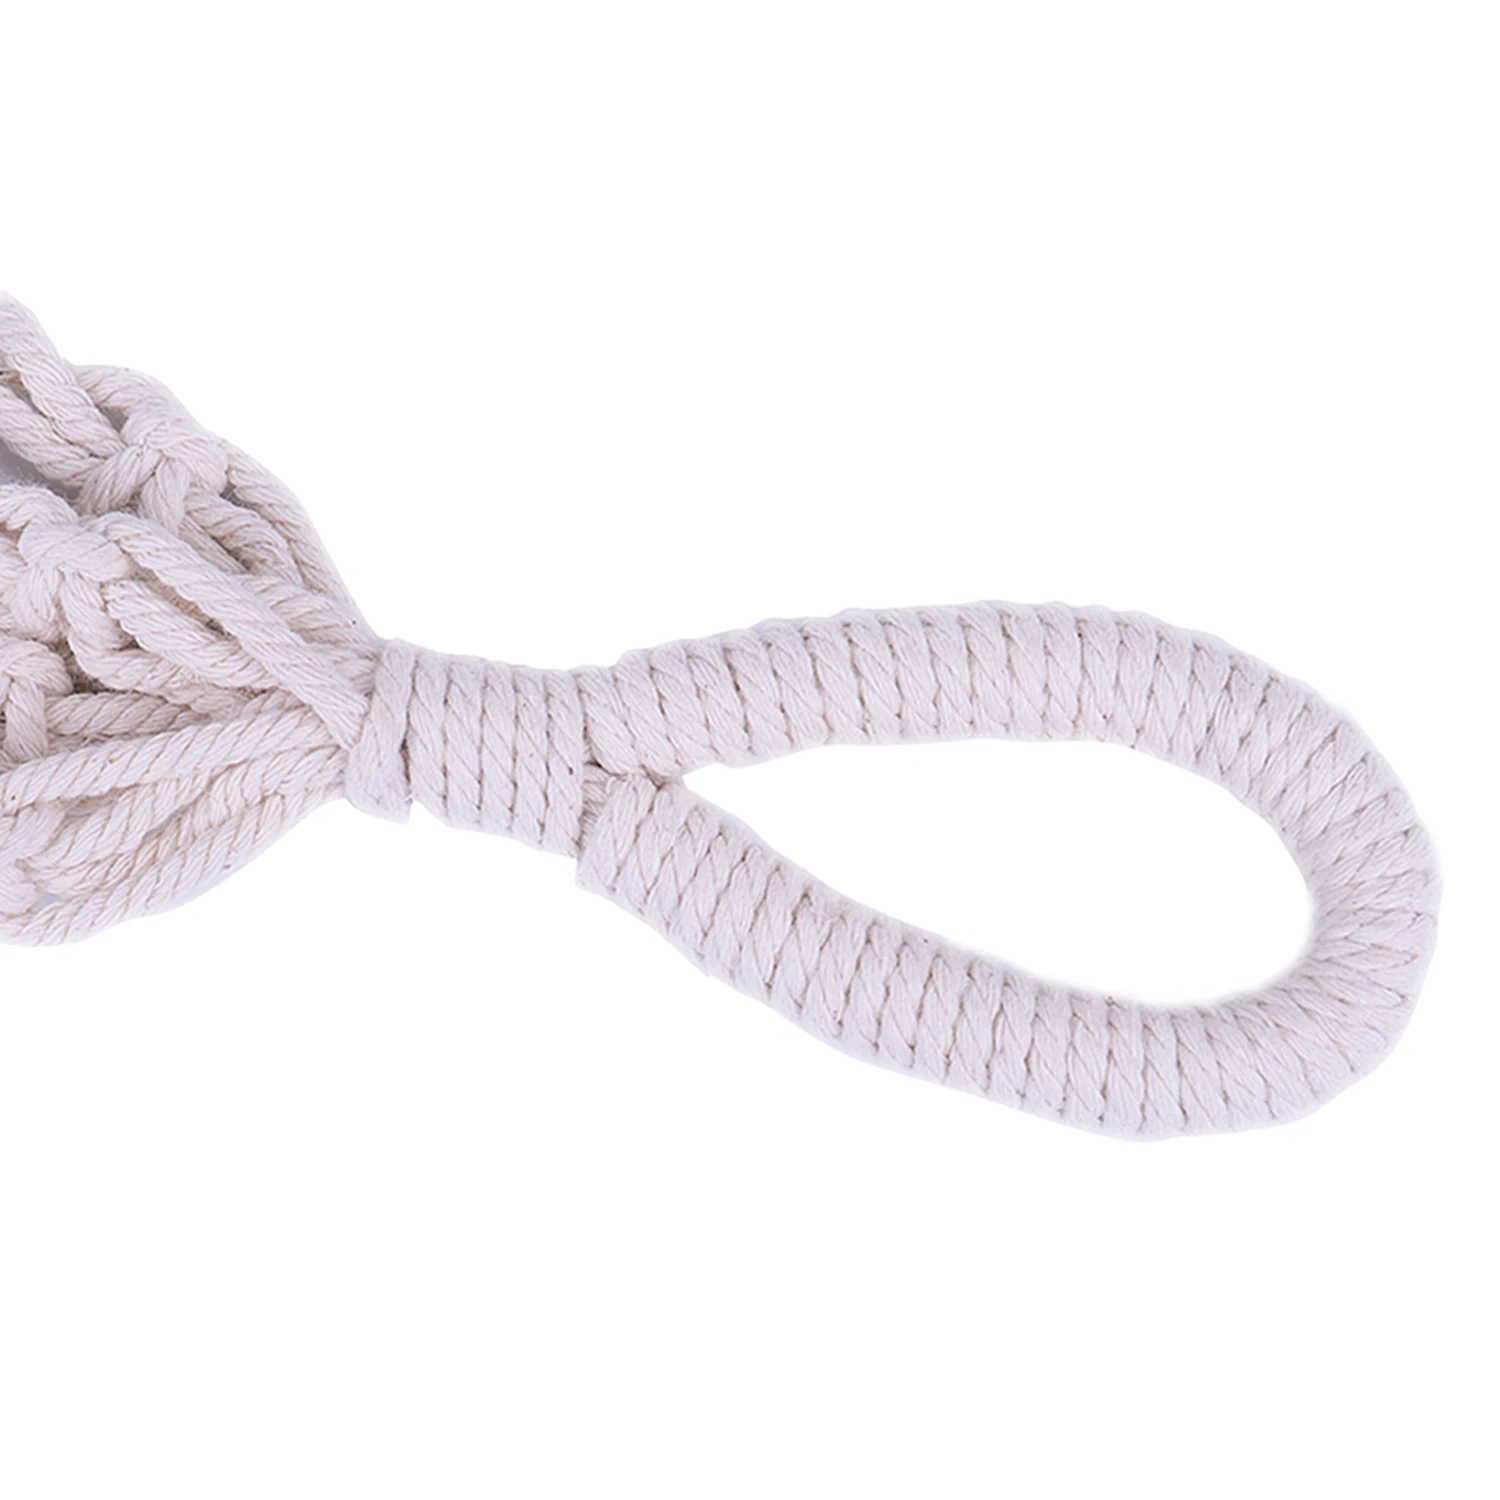 IALJ Топ Винтаж горшок держатель подвеска для растений из макраме Кашпо Корзина хлопчатобумажной веревки плетеные, модель 3 #85 см